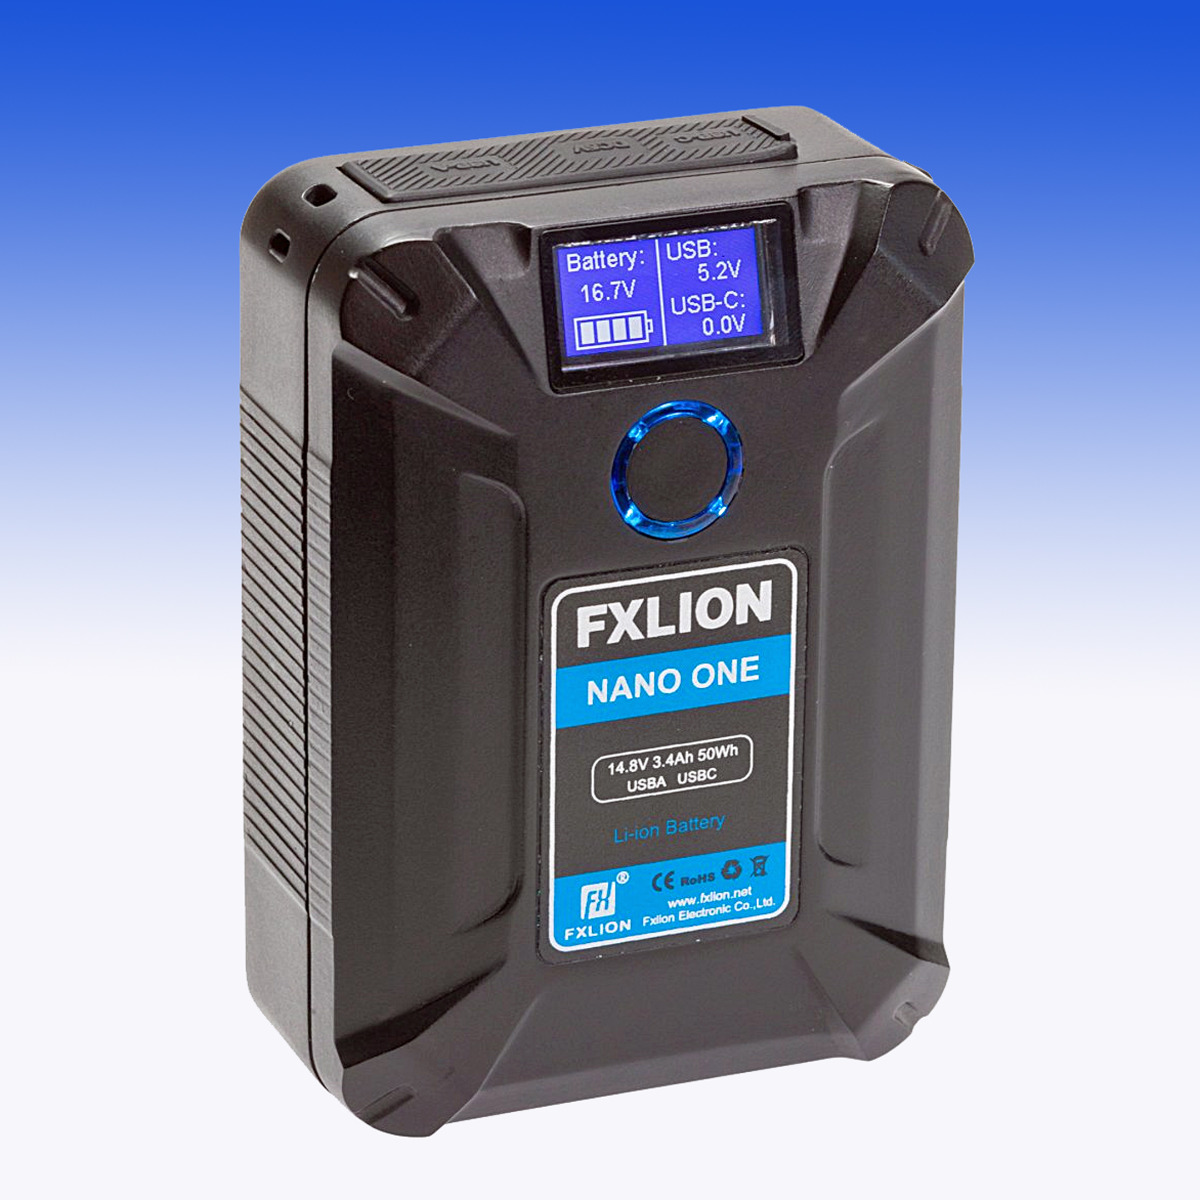 FXLION NANO ONE kompakte 14,8V 50WH V-Mount Batterie